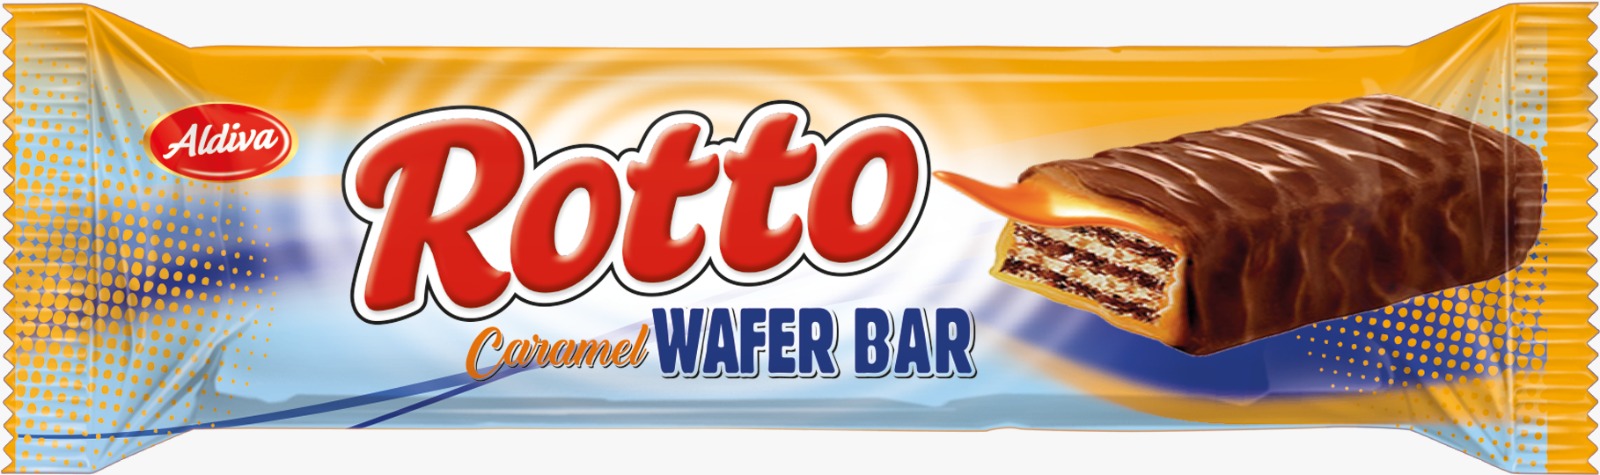 Rotto Caramel Wafer Bar 